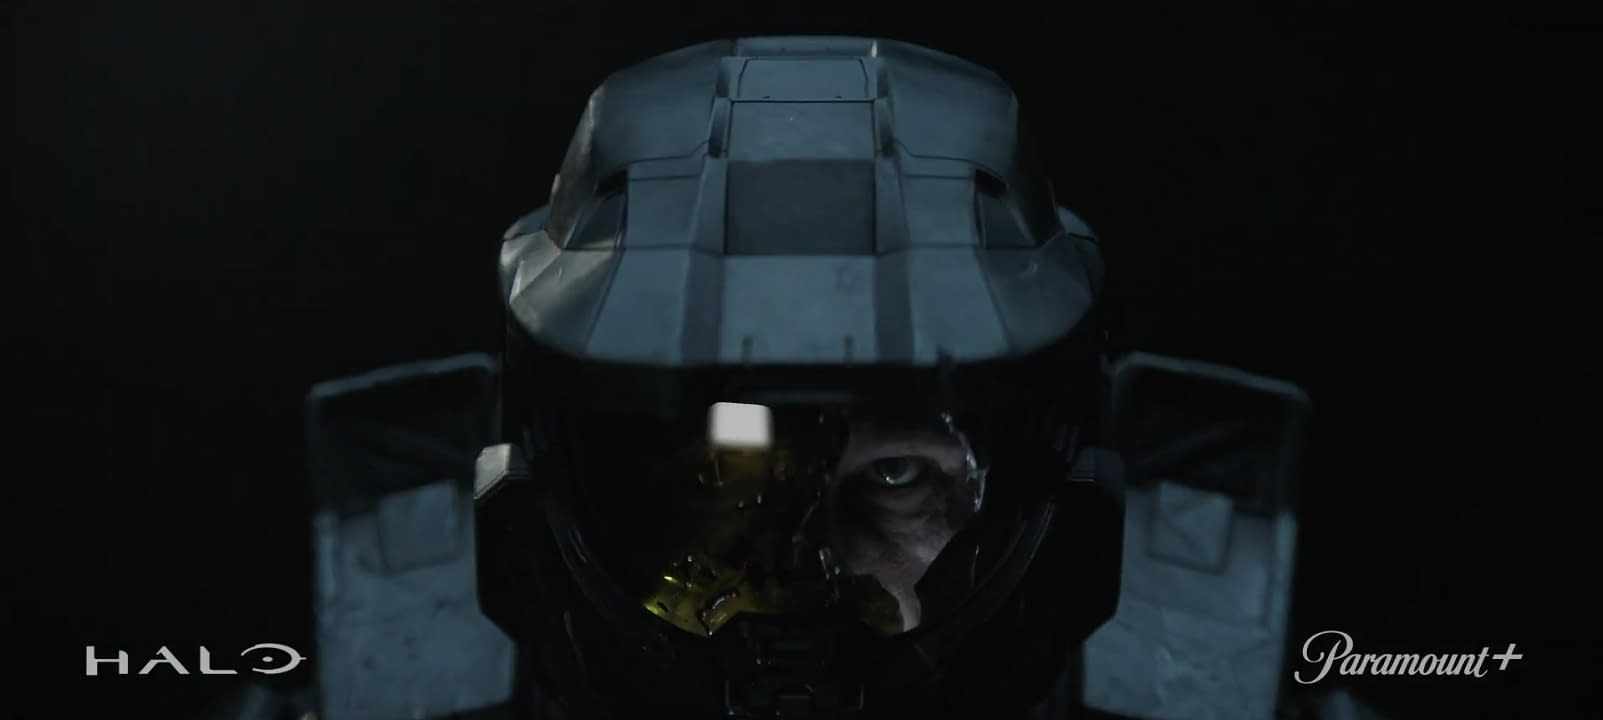 HALO Season 2 Teaser Spotlights Master Chief, Humanity's Last Hope